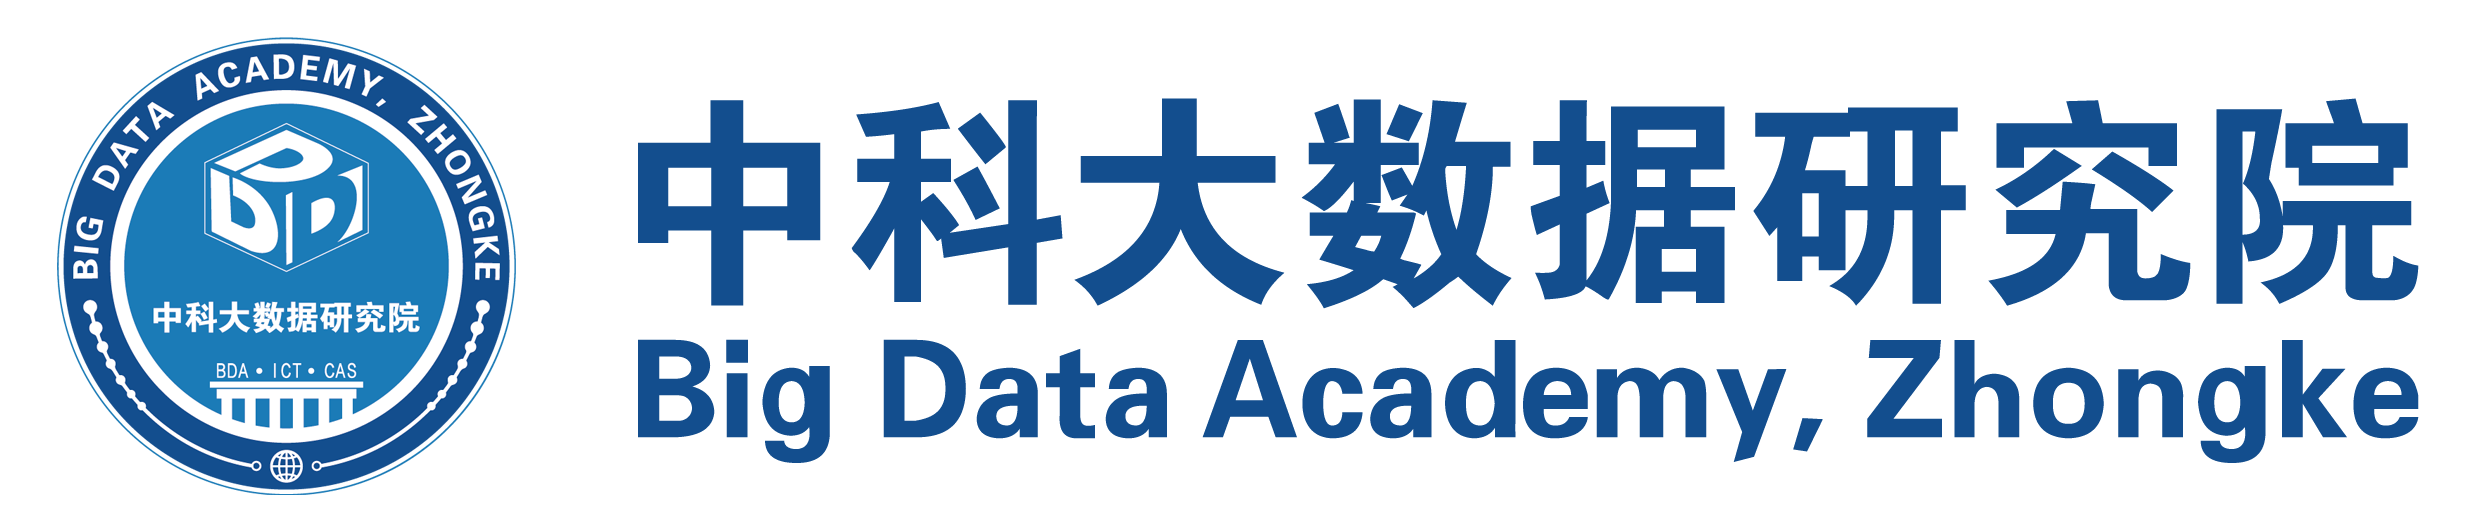 中国科学院计算技术研究大数据研究学院